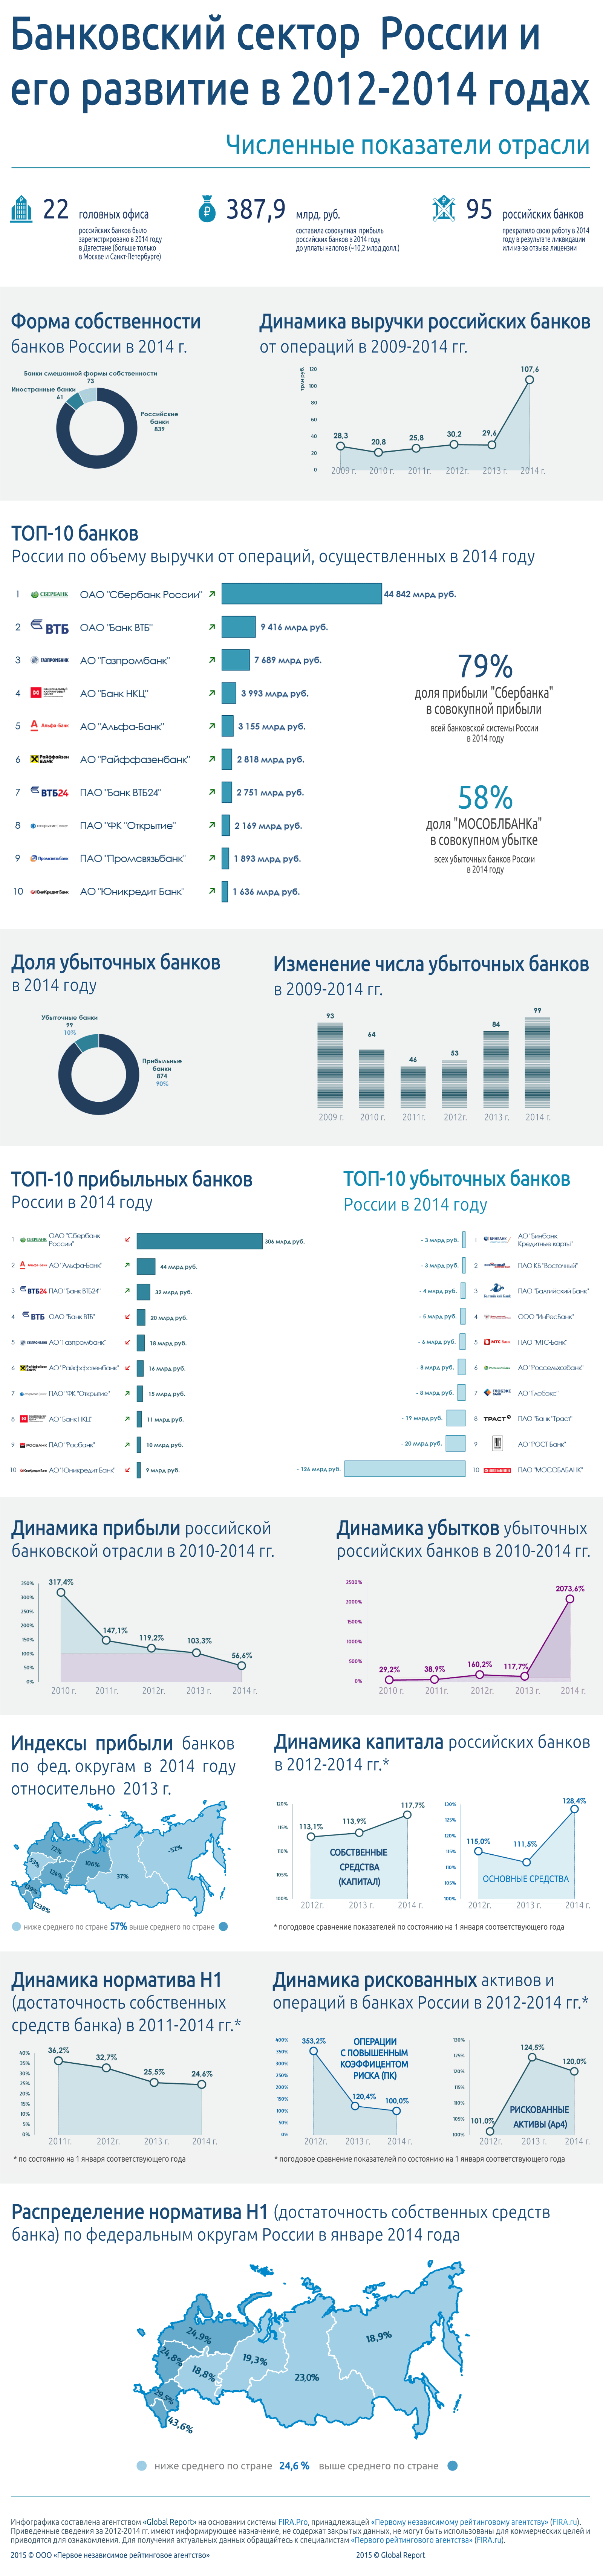 анковский сектор России в 2012-2014